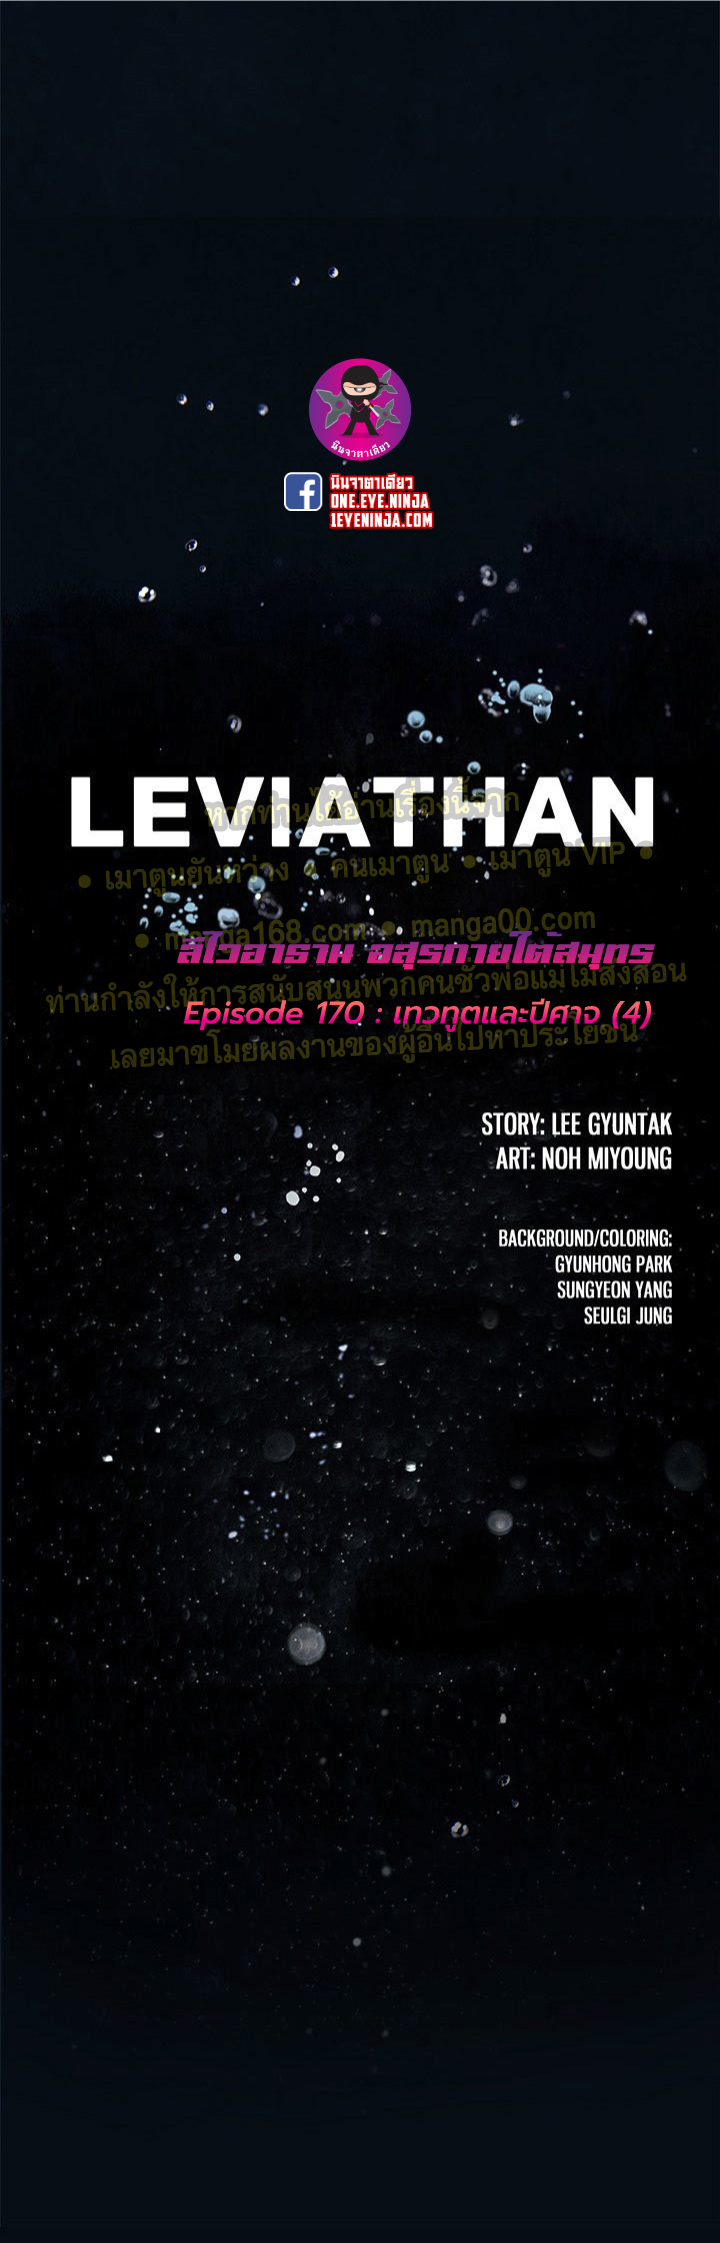 Leviathan170 01